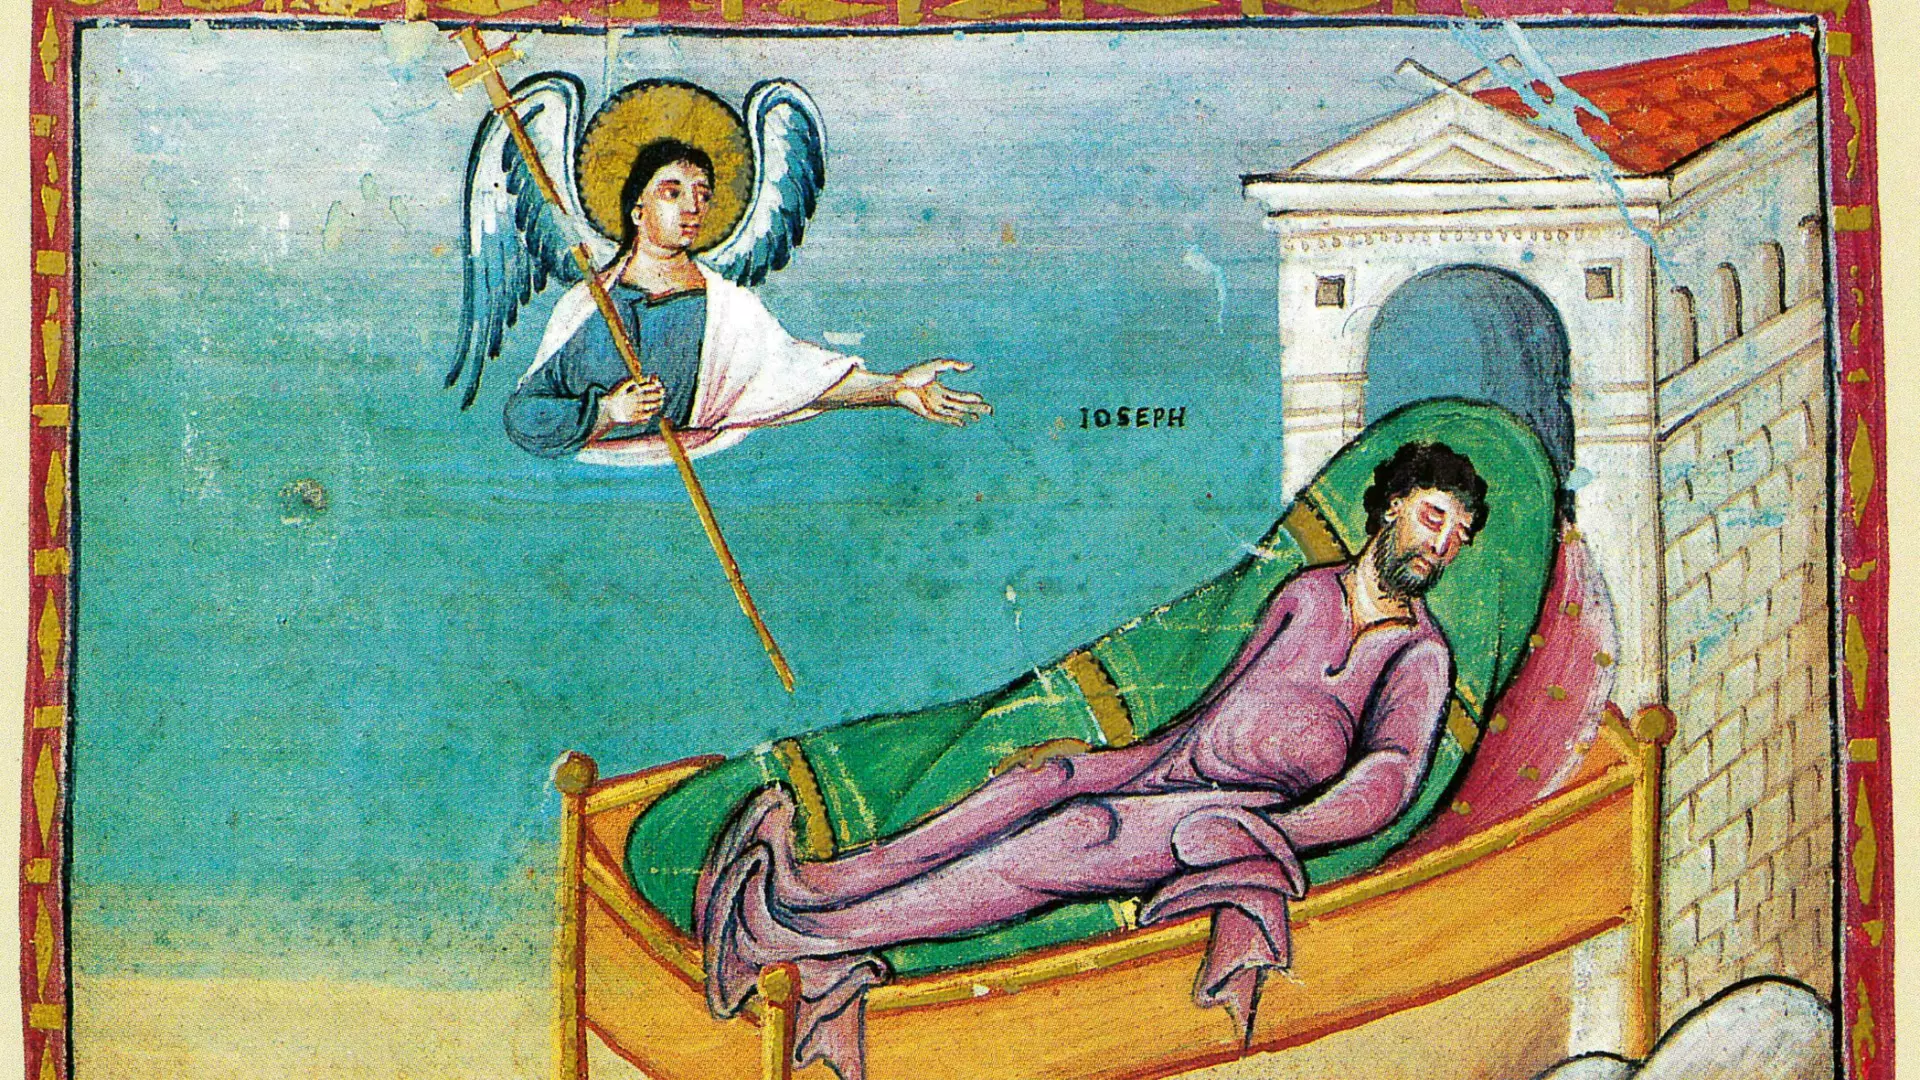 Annonce à Joseph par l'ange - Codex Egberti (Xe siècle)